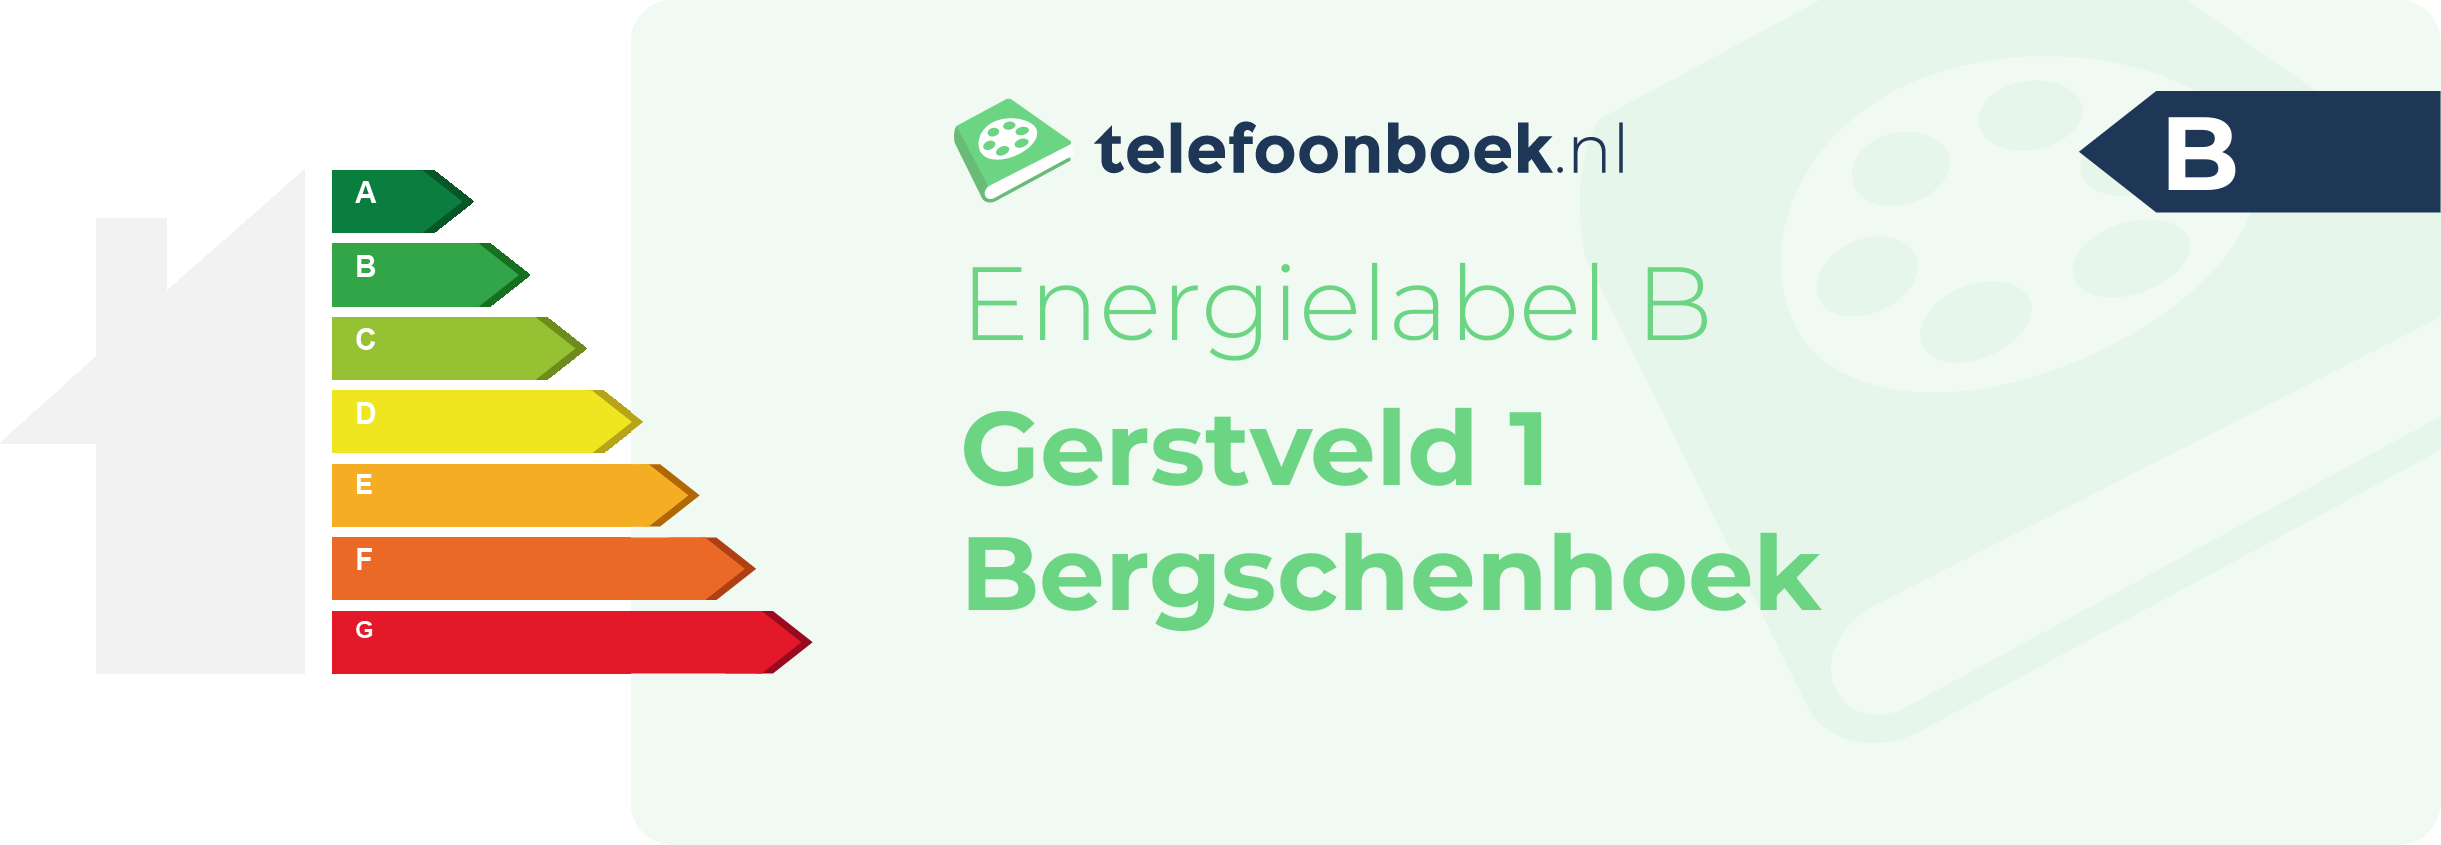 Energielabel Gerstveld 1 Bergschenhoek